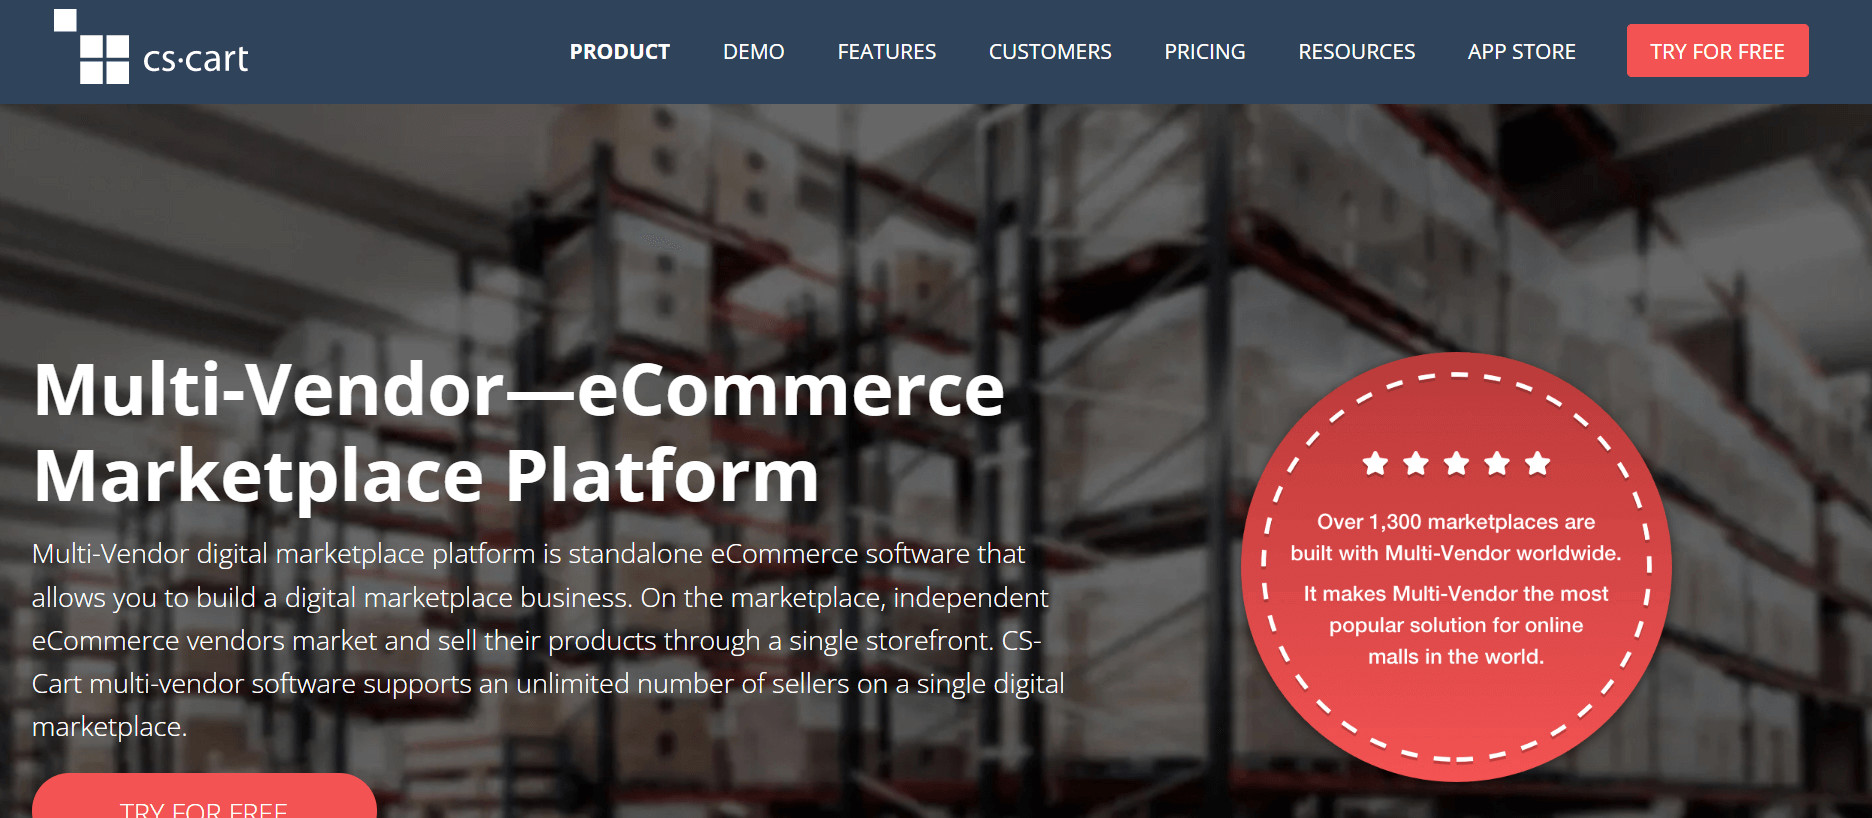 CS-Cart multi vendor ecommerce software: better for B2C